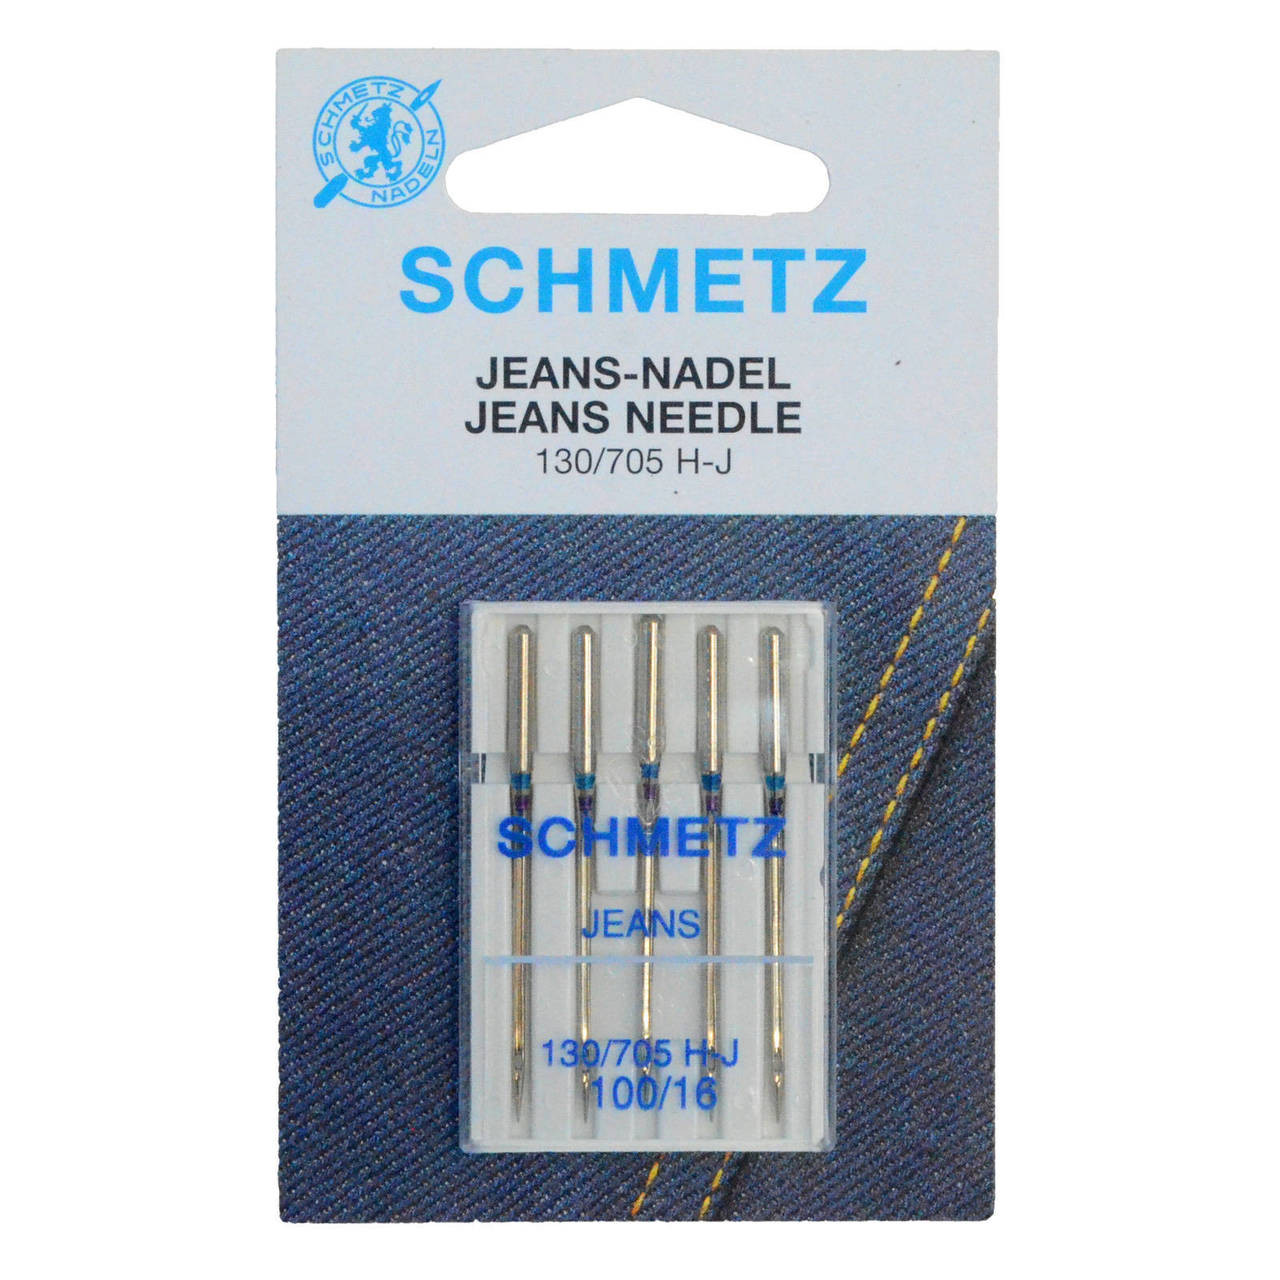 Schmetz Jeans/denim Needles Sewing Machine Needles 90/14, 100/16, 110/18  Art.1836 